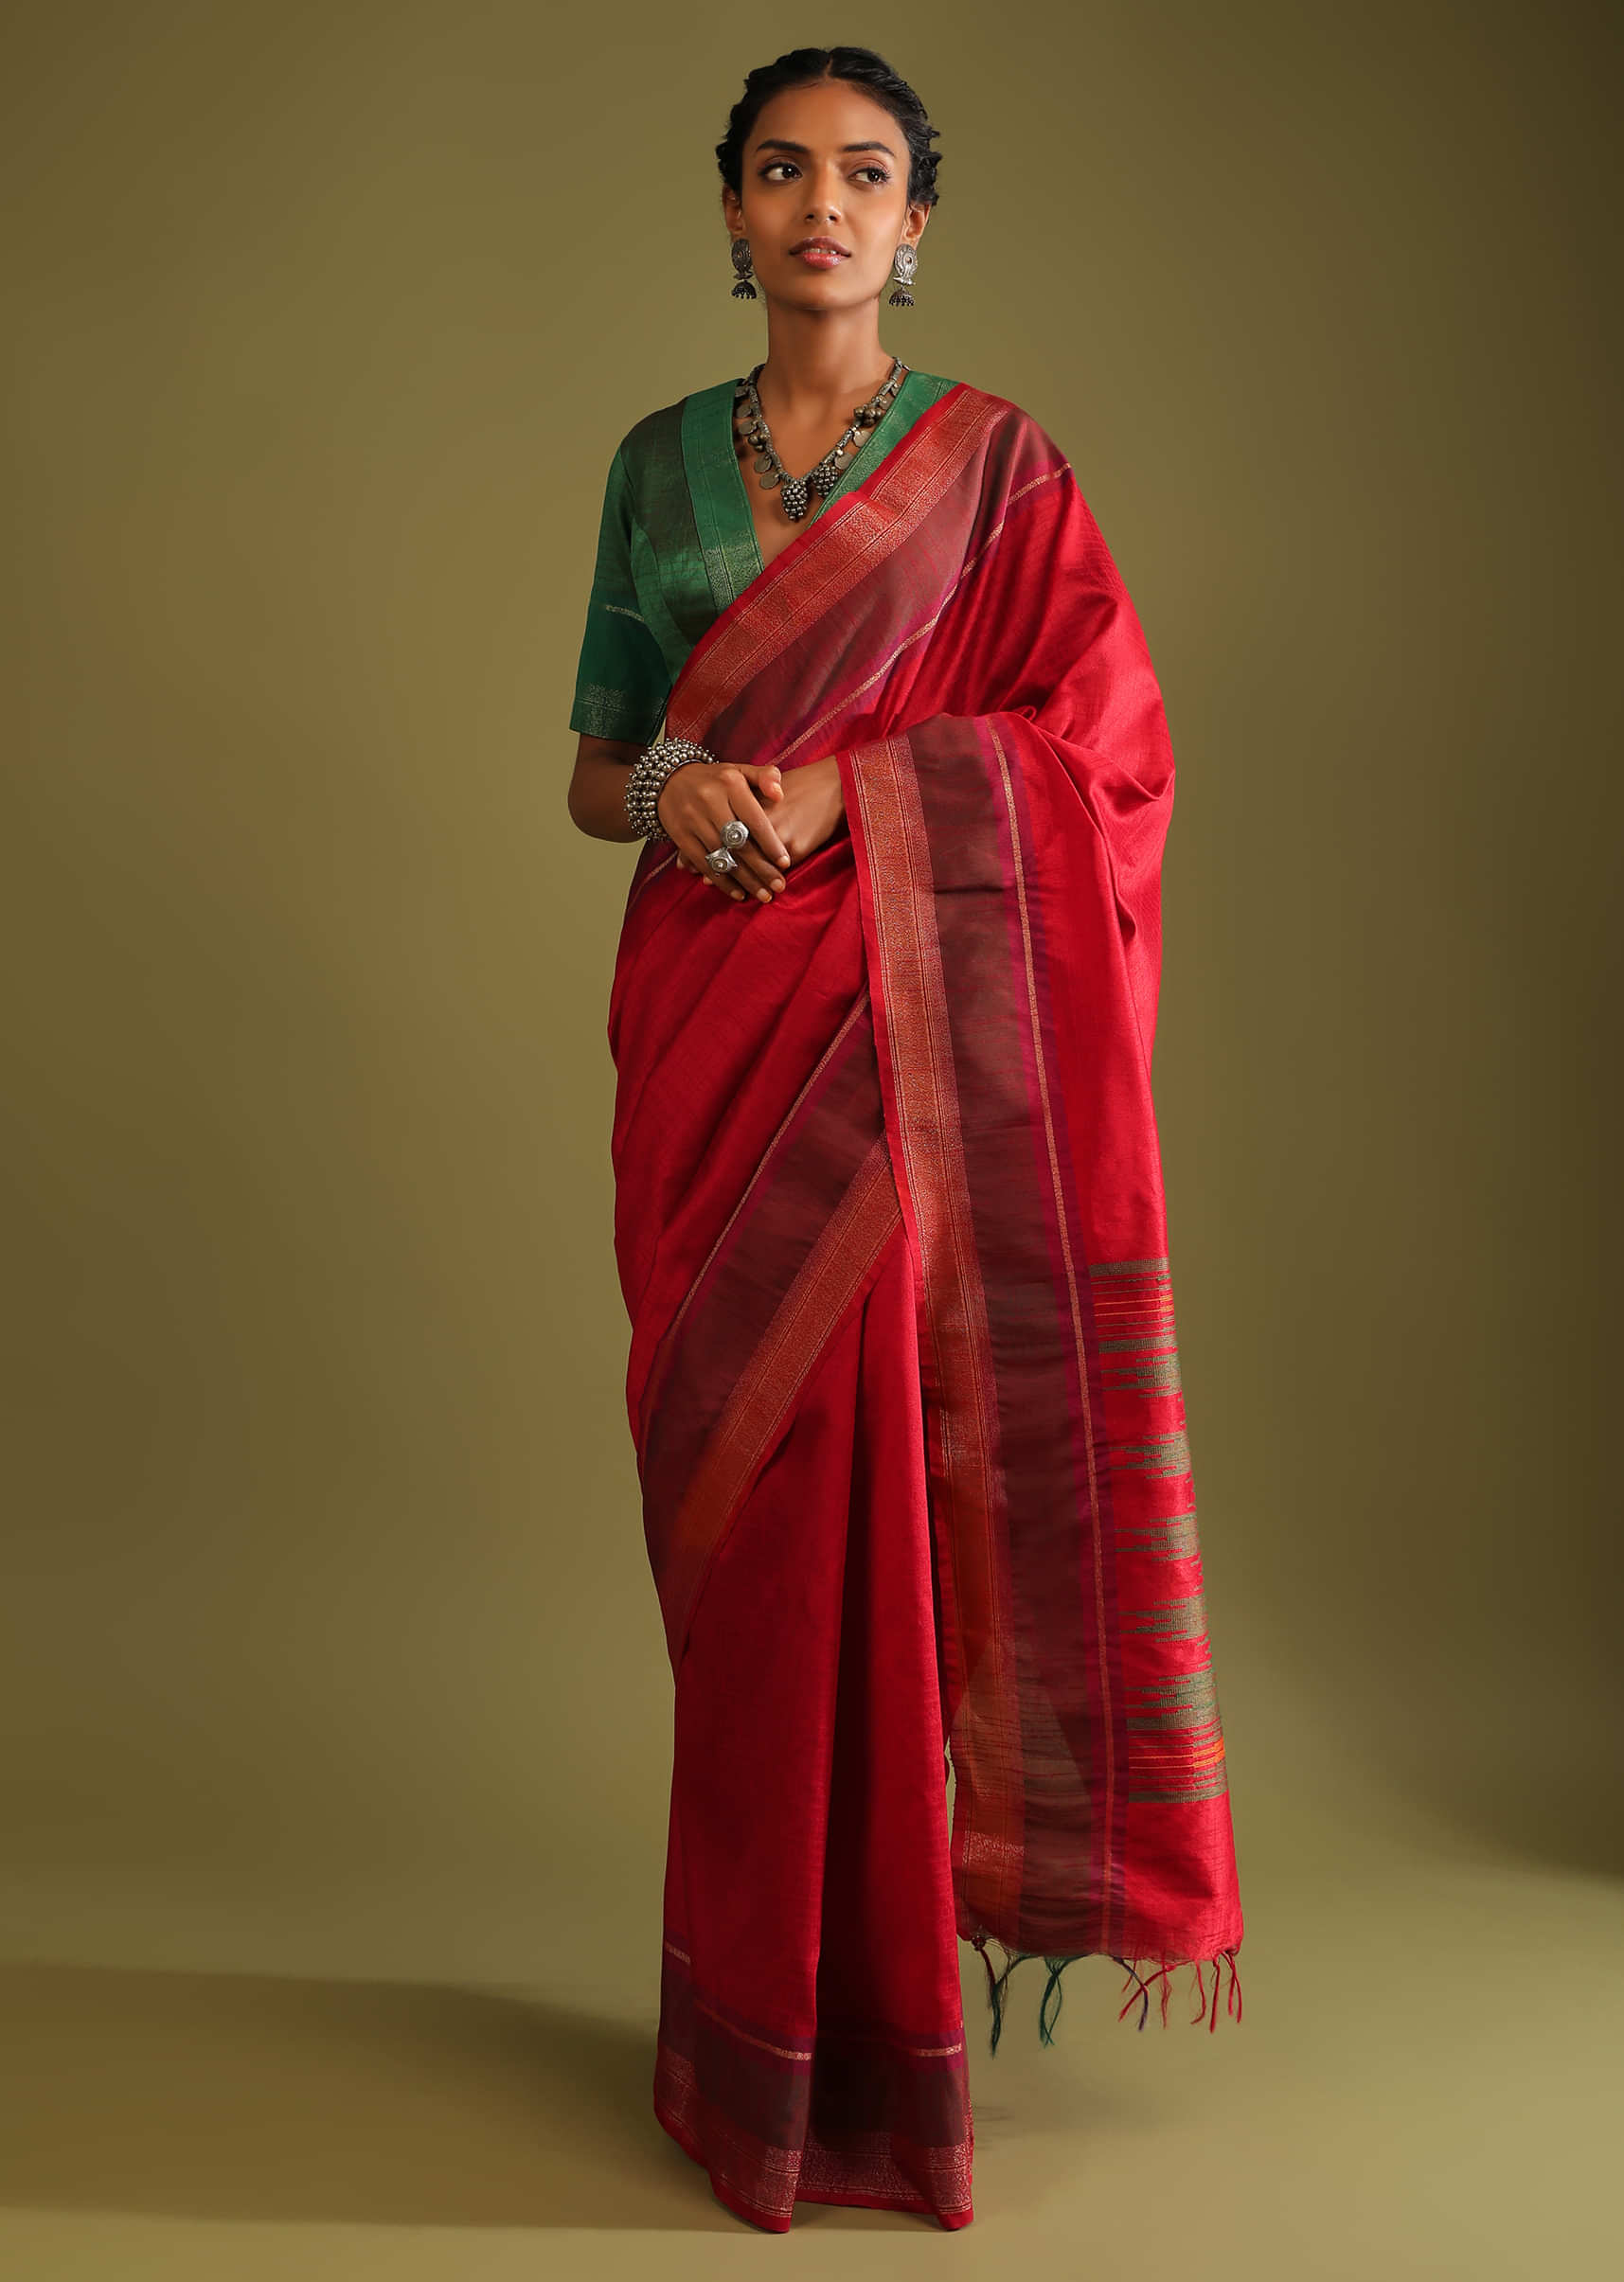 Banarasi Silk Saree Multi Color With Embroidery Work - Bridal Banarasi Saree  - Saree